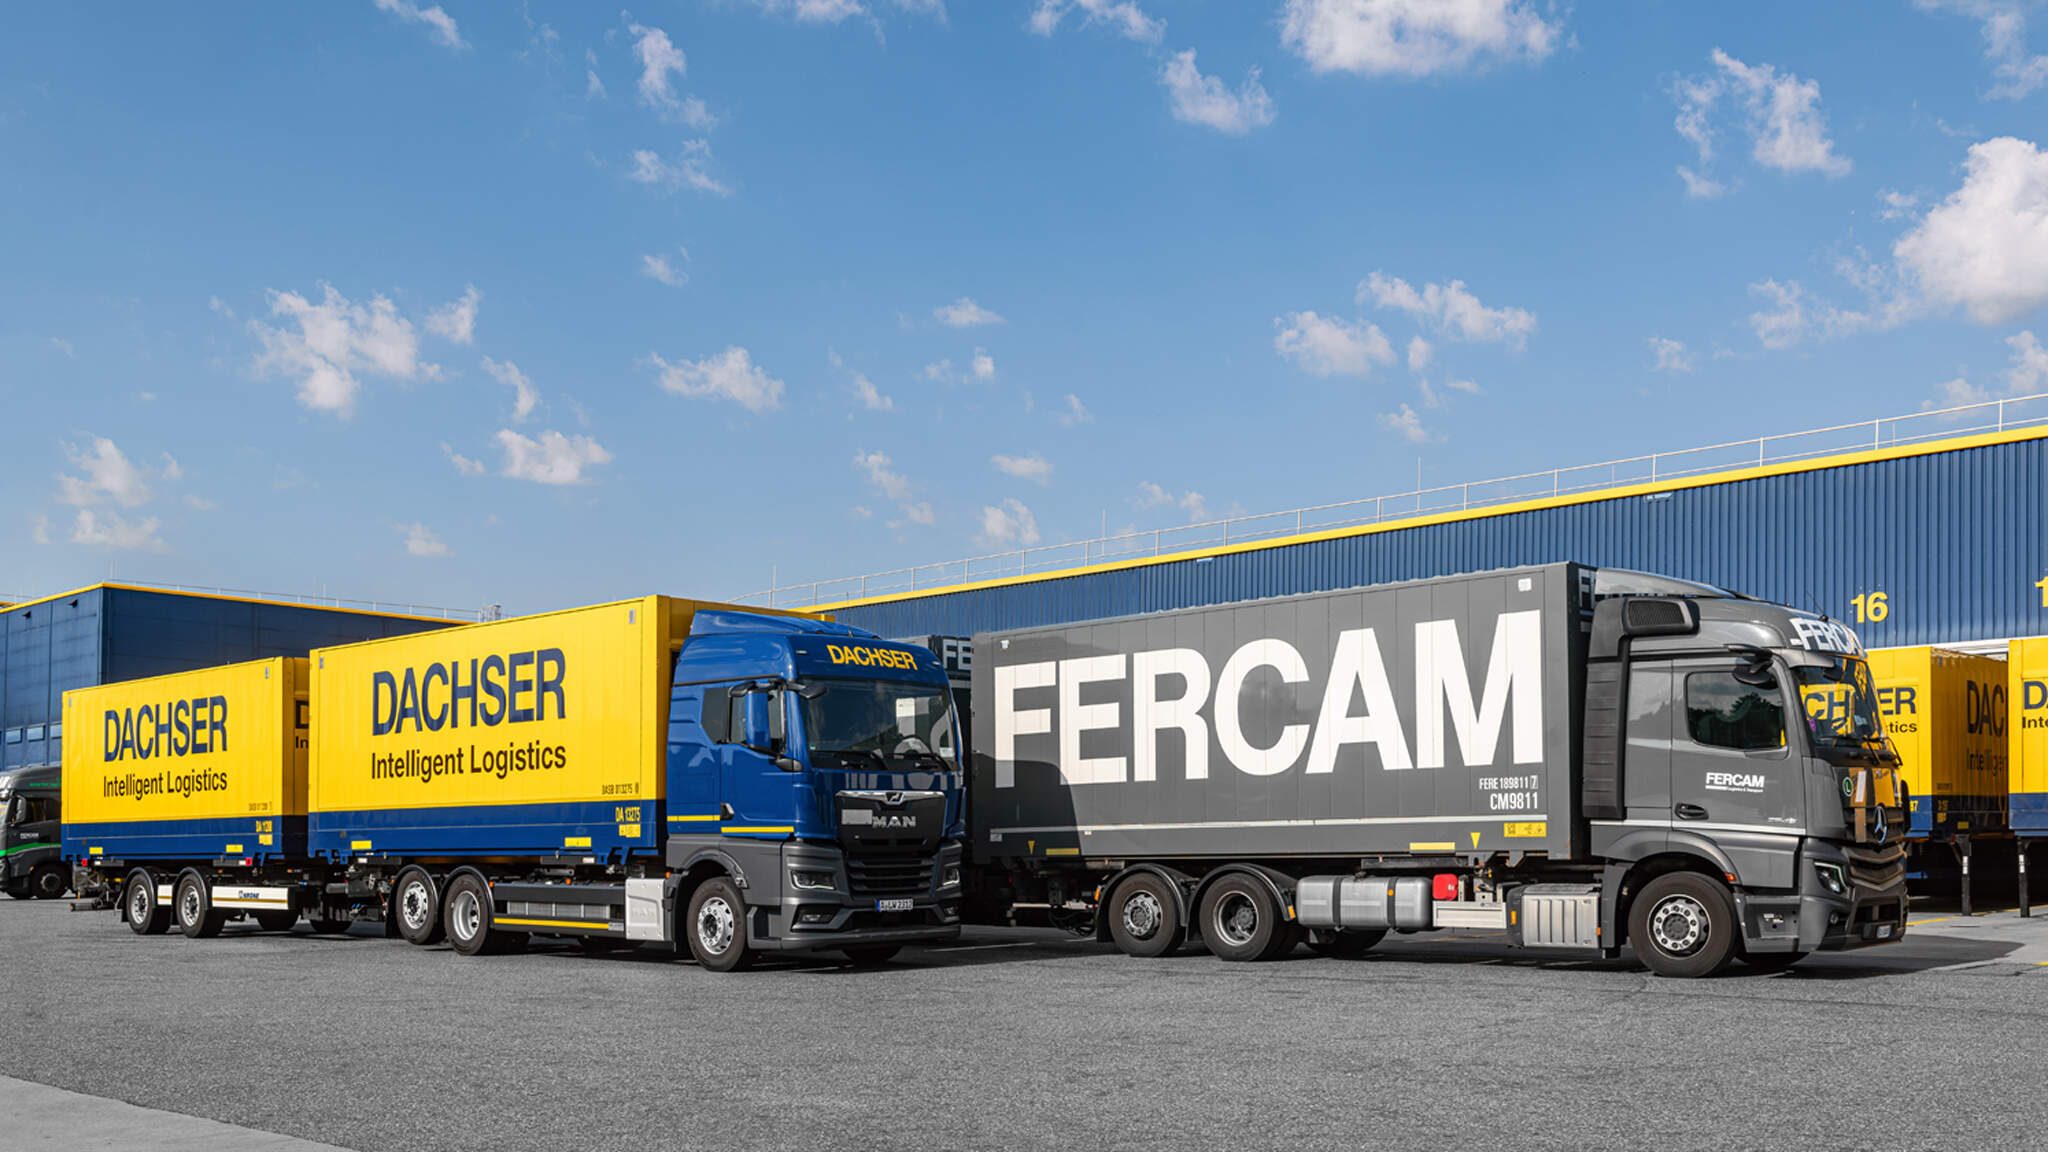 Grâce à leur partenariat de longue date, DACHSER et FERCAM sont déjà bien adaptés l'un à l'autre dans le domaine de la manutention opérationnelle des colis de détail.